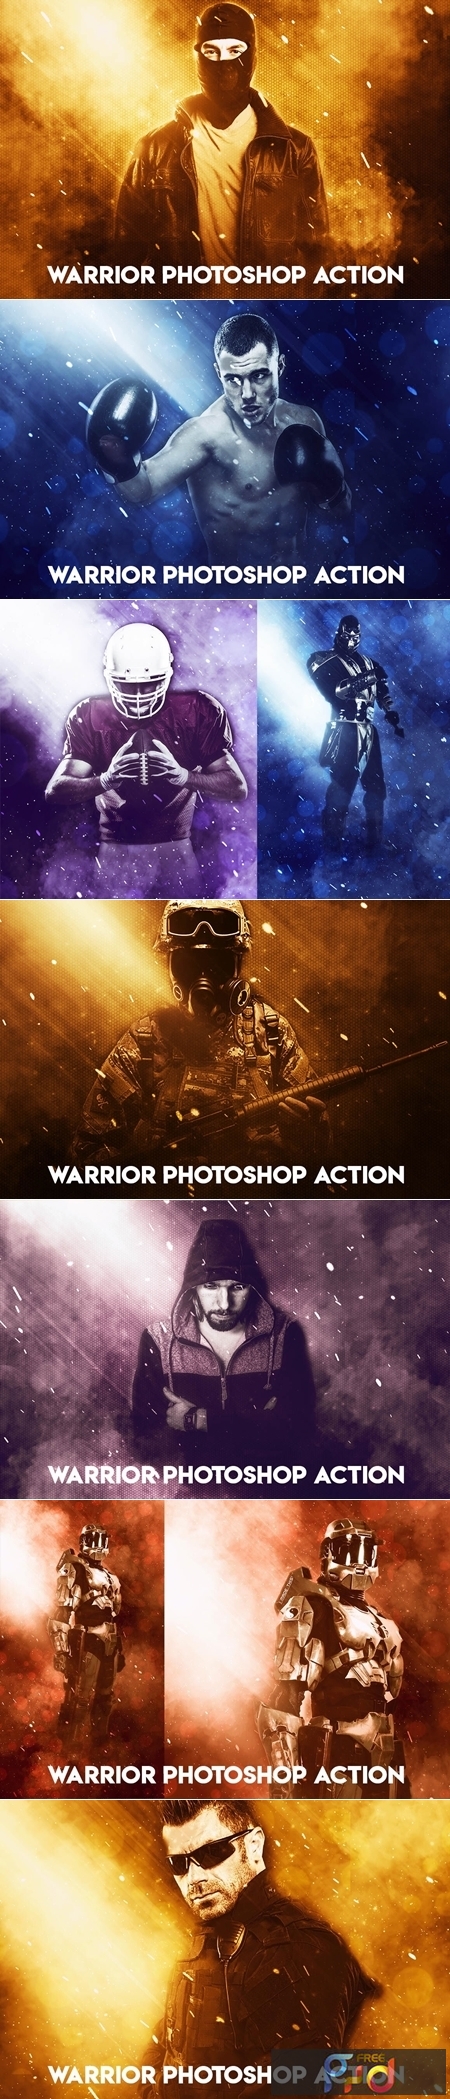 Warrior Photoshop